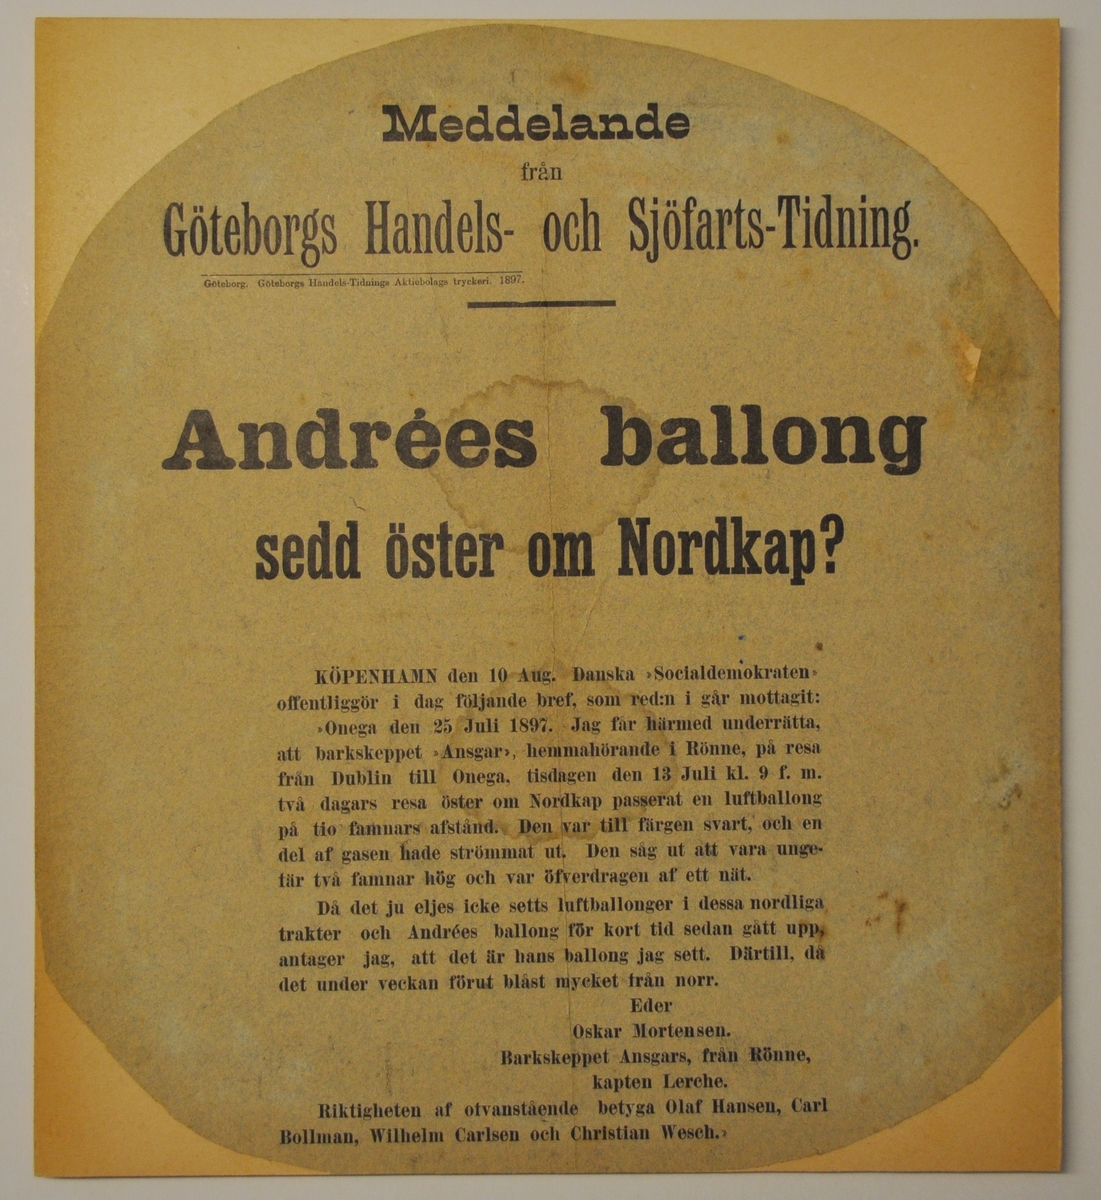 Löpsedel, meddelande: "Andrées ballong sedd öster om Nordkap?"
Uppklistrad på kartong.